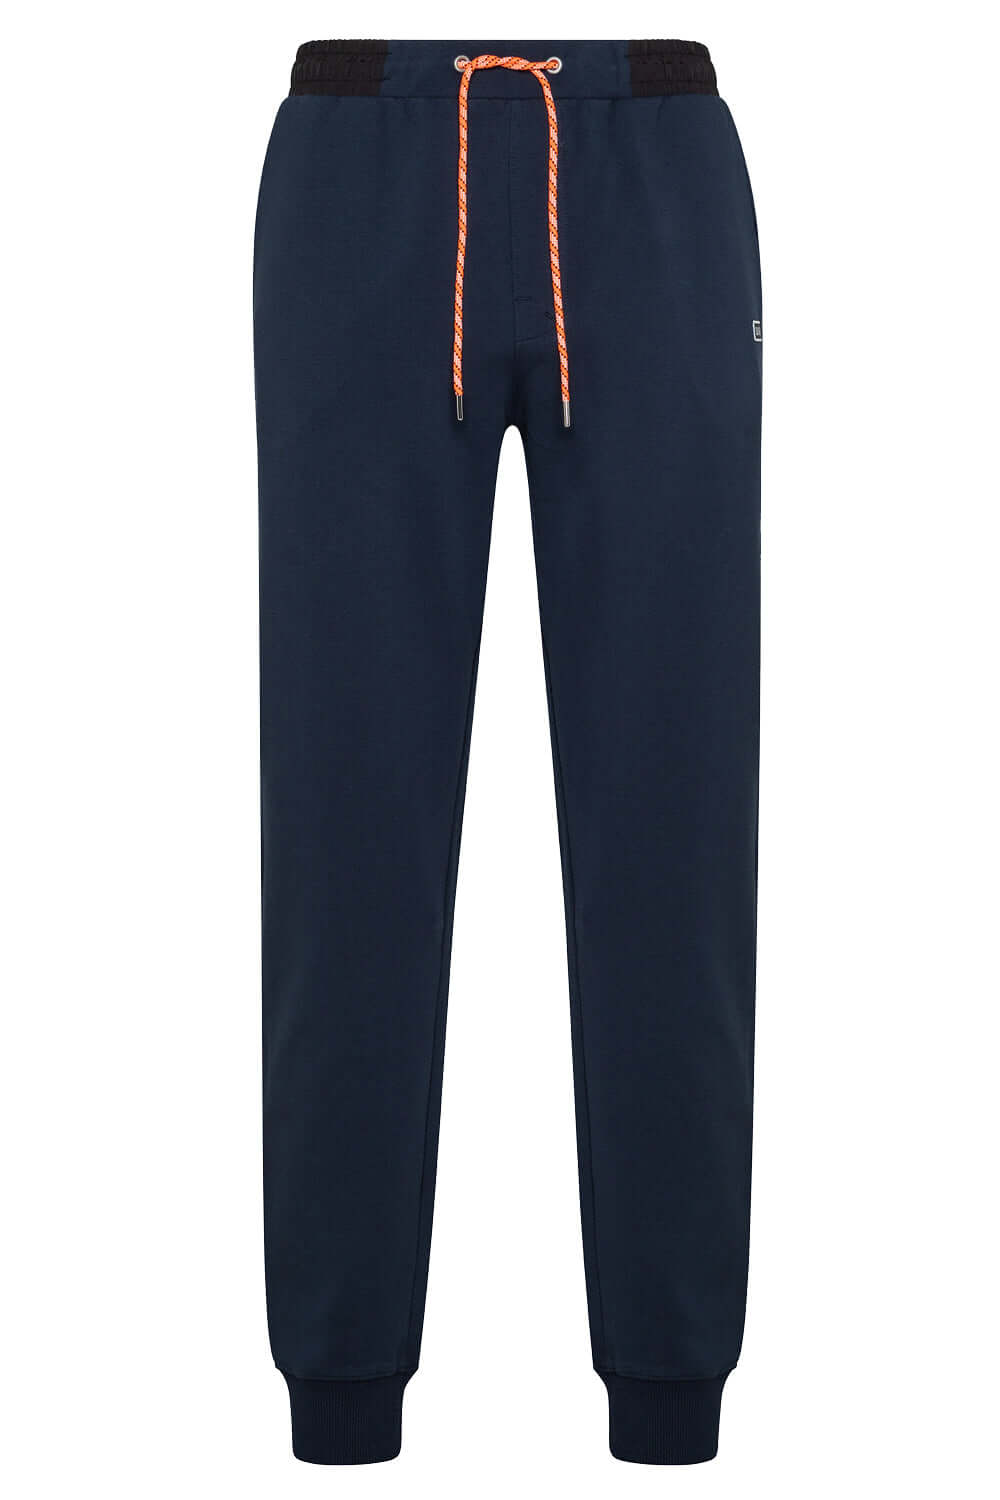 Image of Pantalone con dettagli in nylon - SUN68